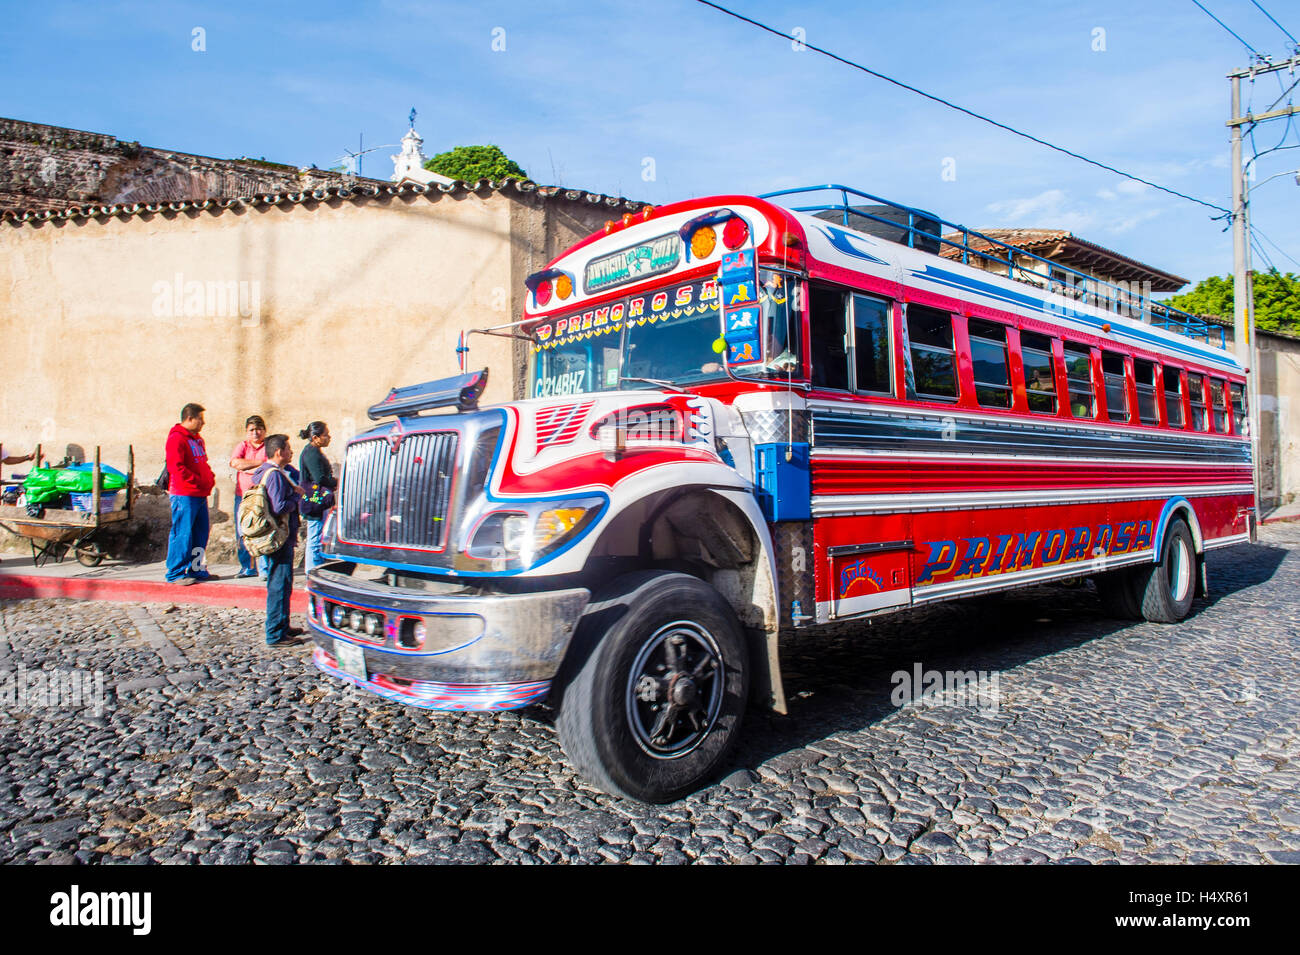 ANTIGUA GUATEMALA - 31 Luglio: un tipico guatemalteco Bus di pollo in Antigua, Guatemala il 31 luglio 2015. Bus di pollo è un nome f Foto Stock